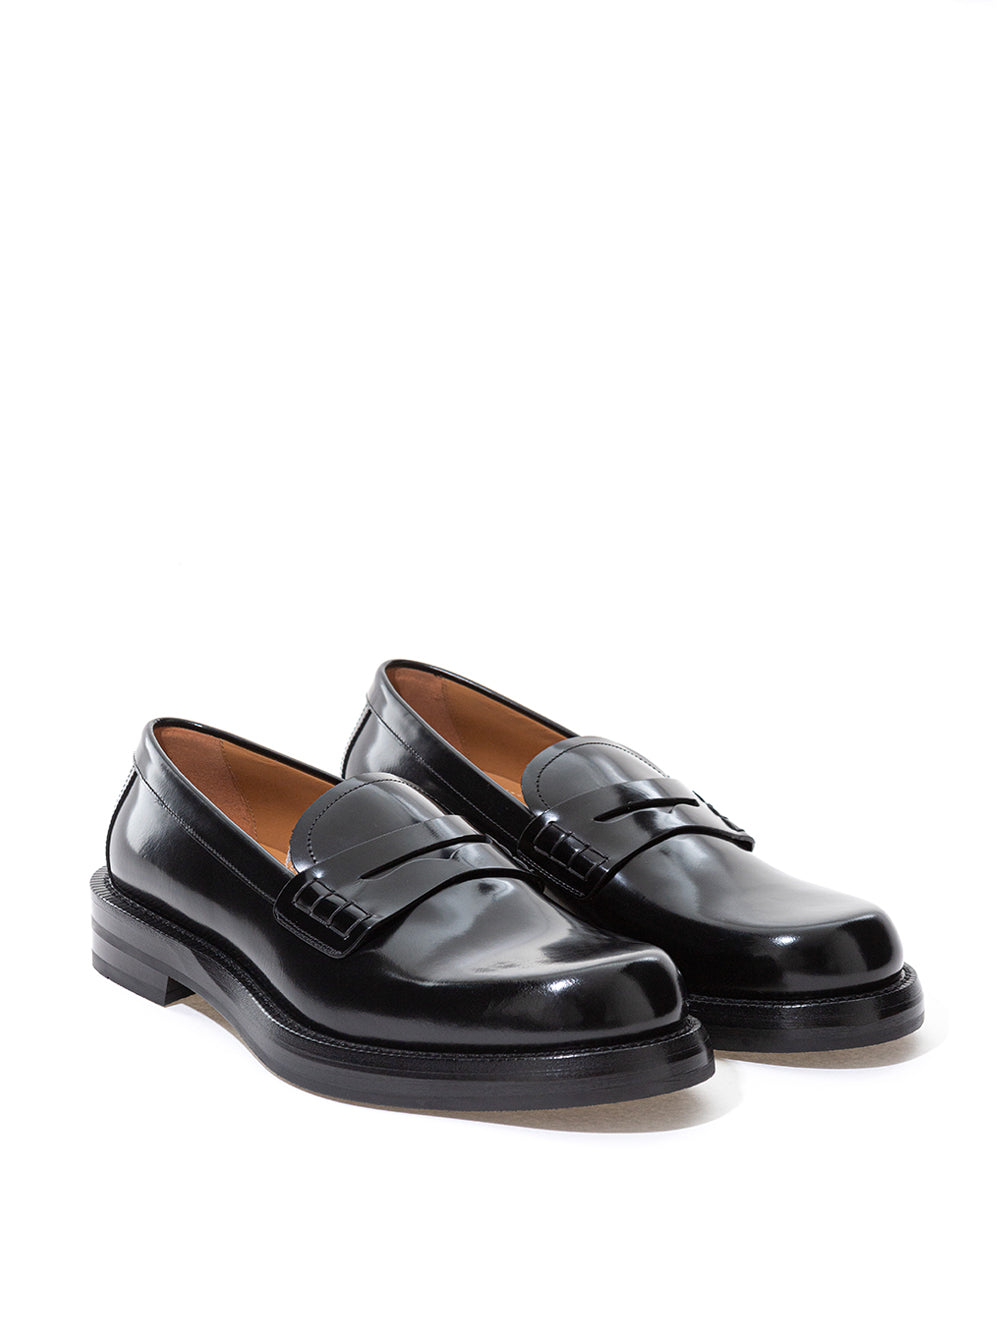 Dior Elegant Black Leather Loafers for Men